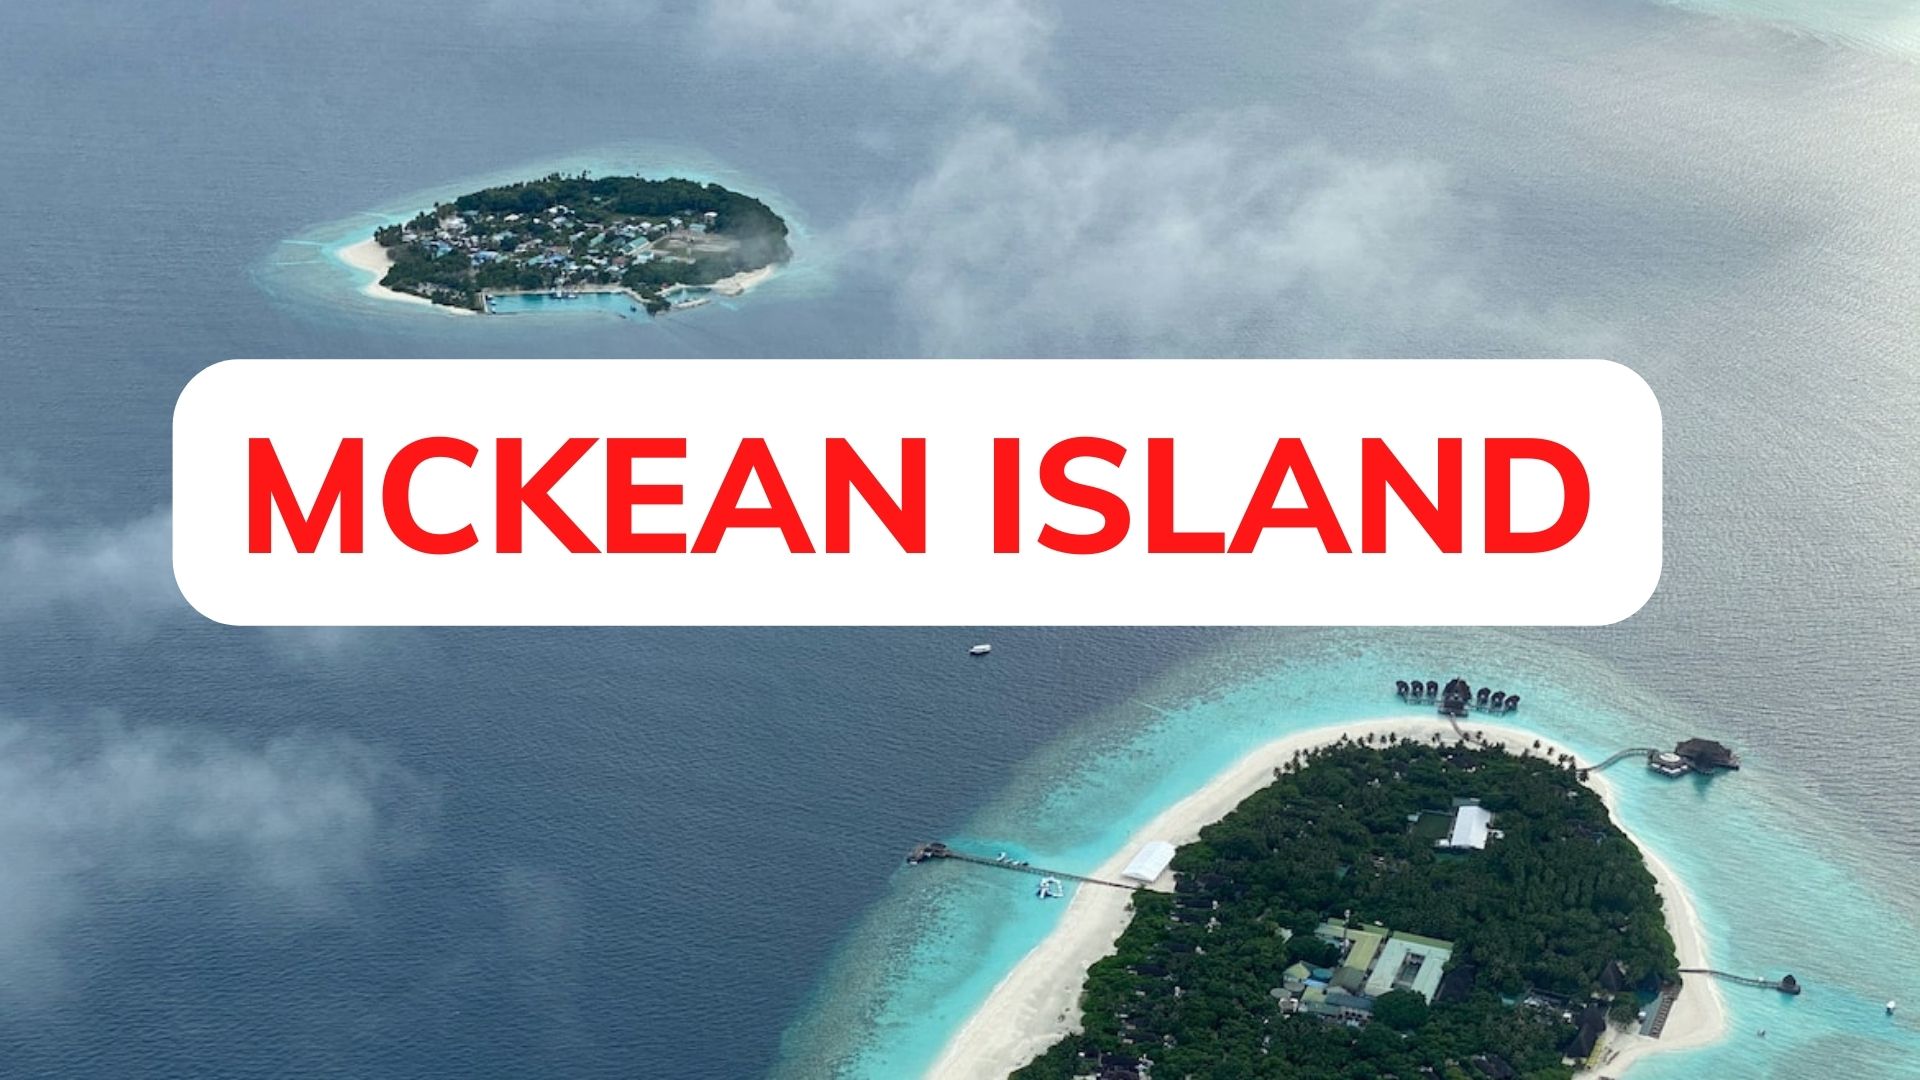 Mckean - A Coral-raised Island